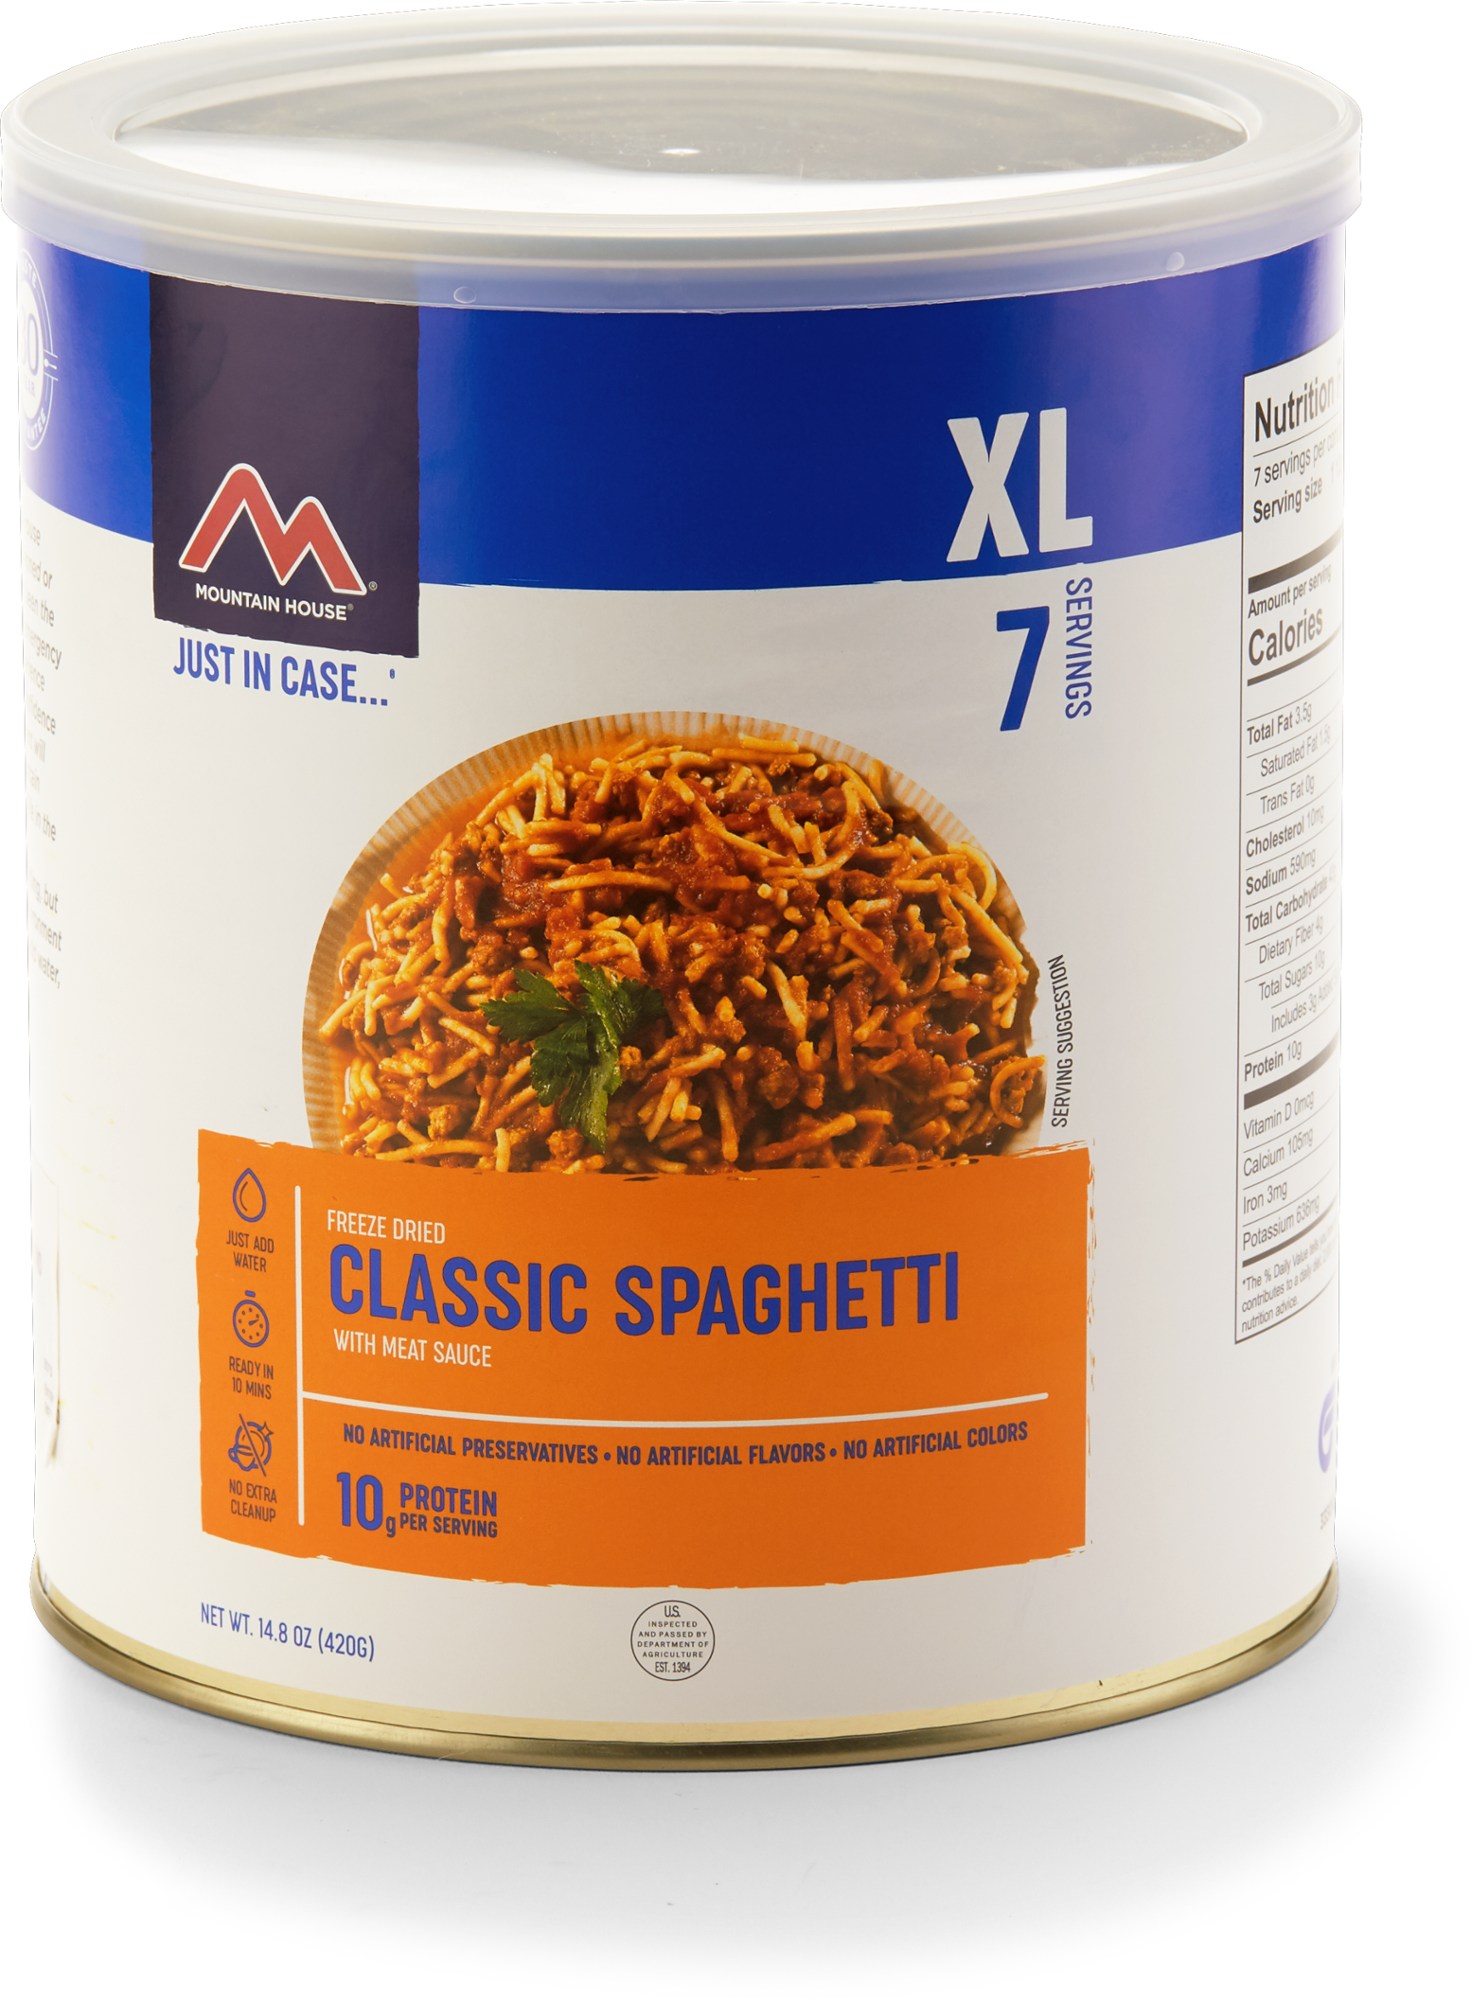 Классические спагетти с мясным соусом - банка №10 (7 порций) Mountain House сковорода для завтрака xl – 8 порций mountain house